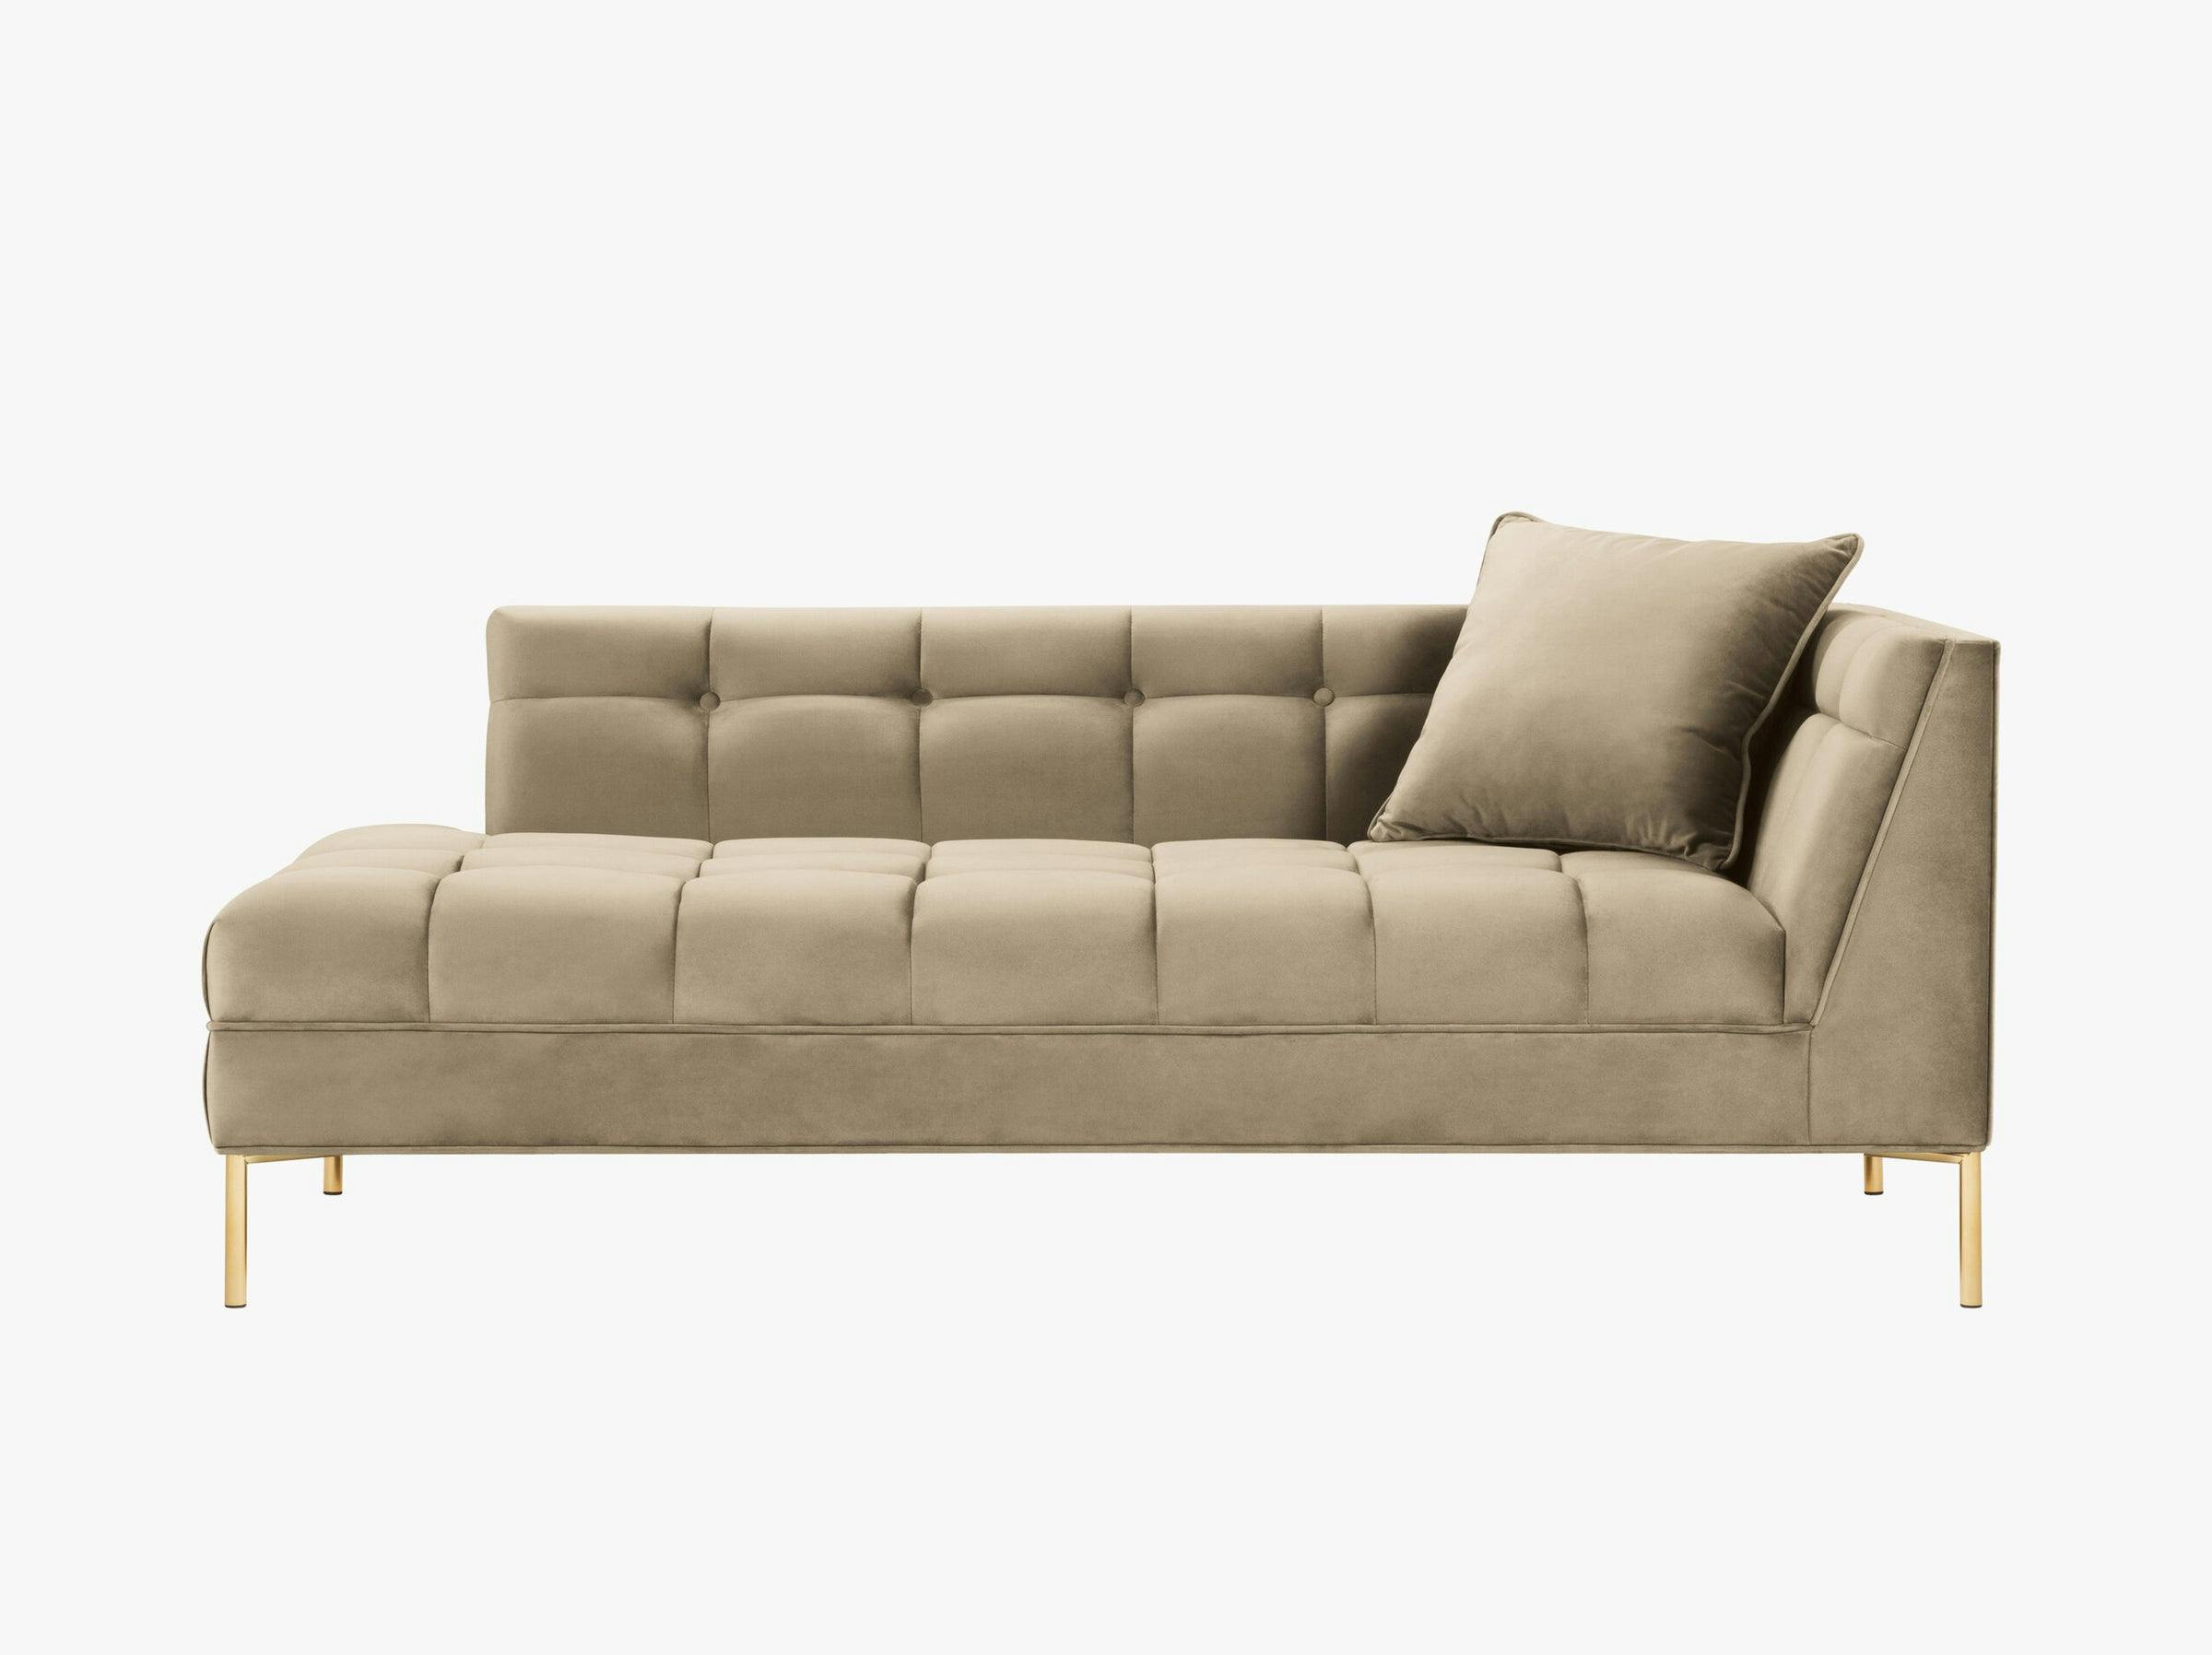 Karoo sofas velvet cappuccino